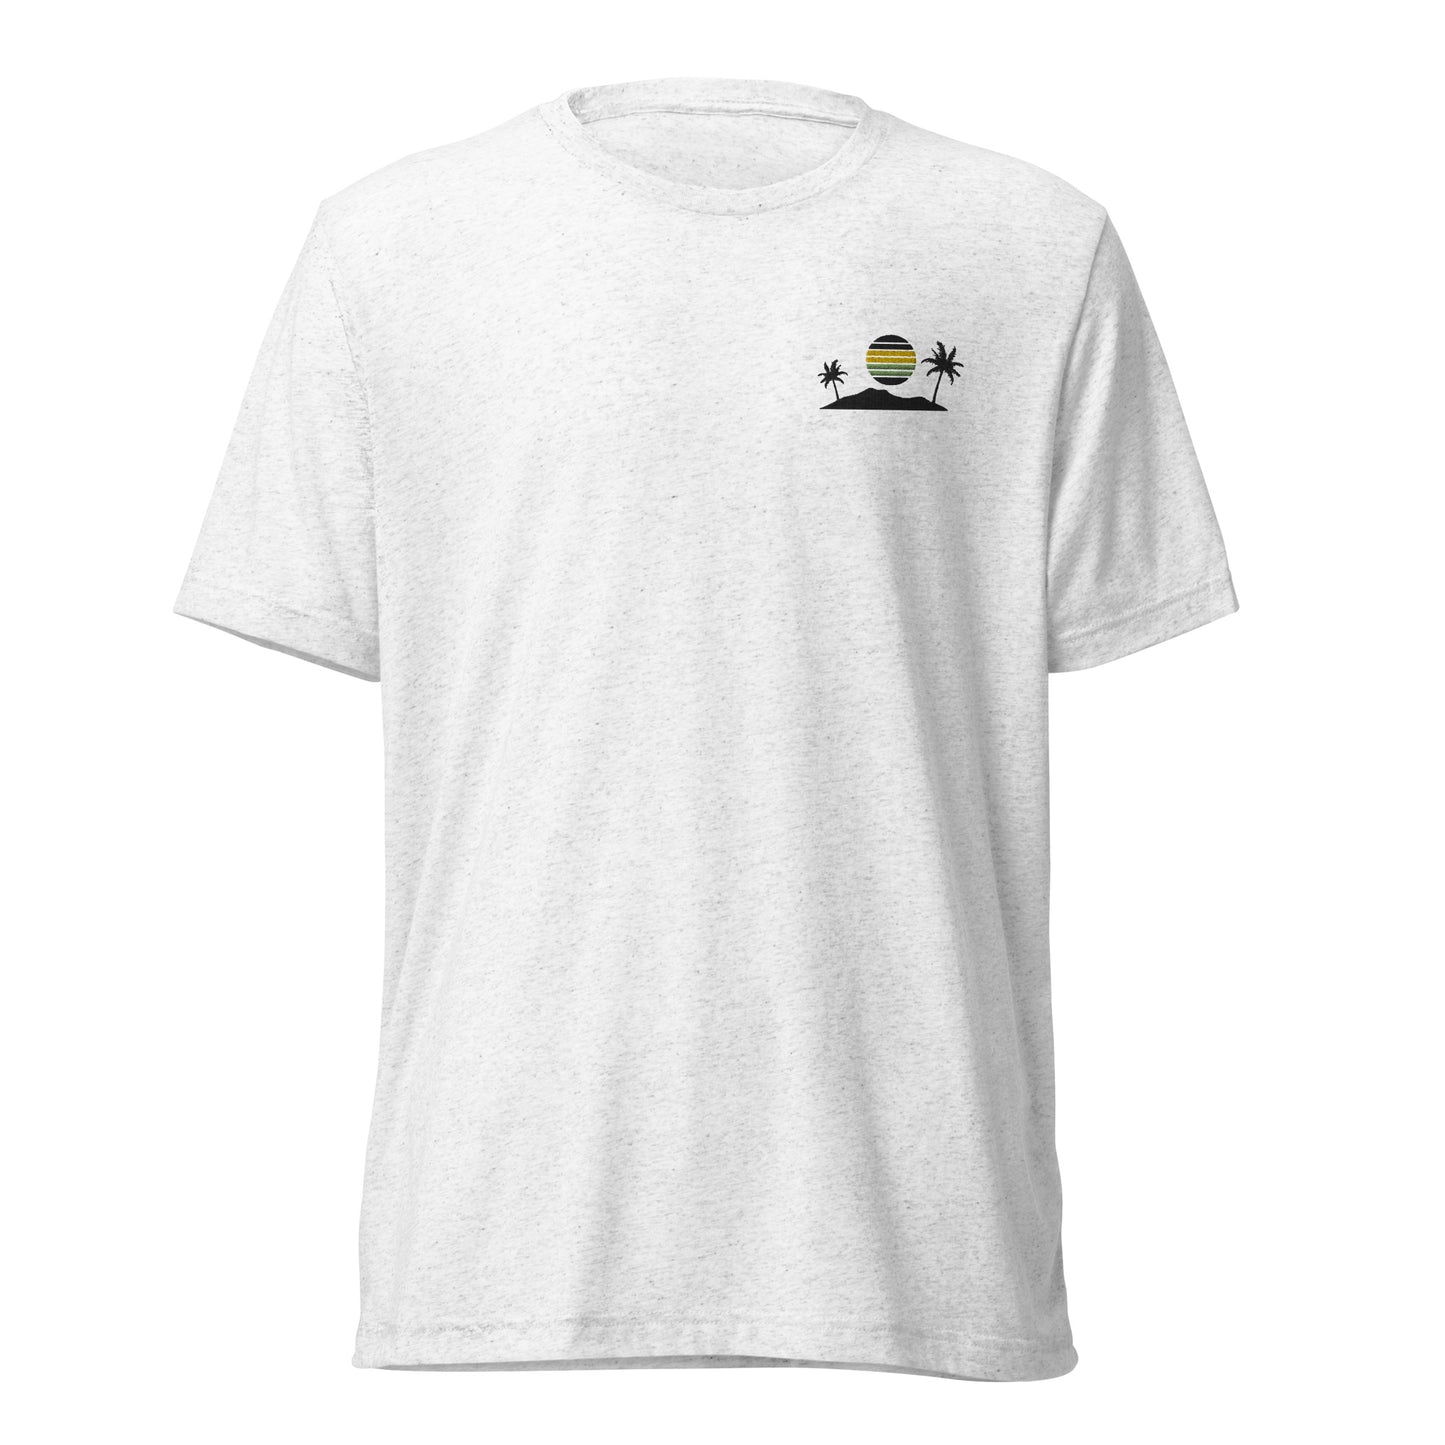 Adventurer's Horizon Embroidered Unisex T-Shirt